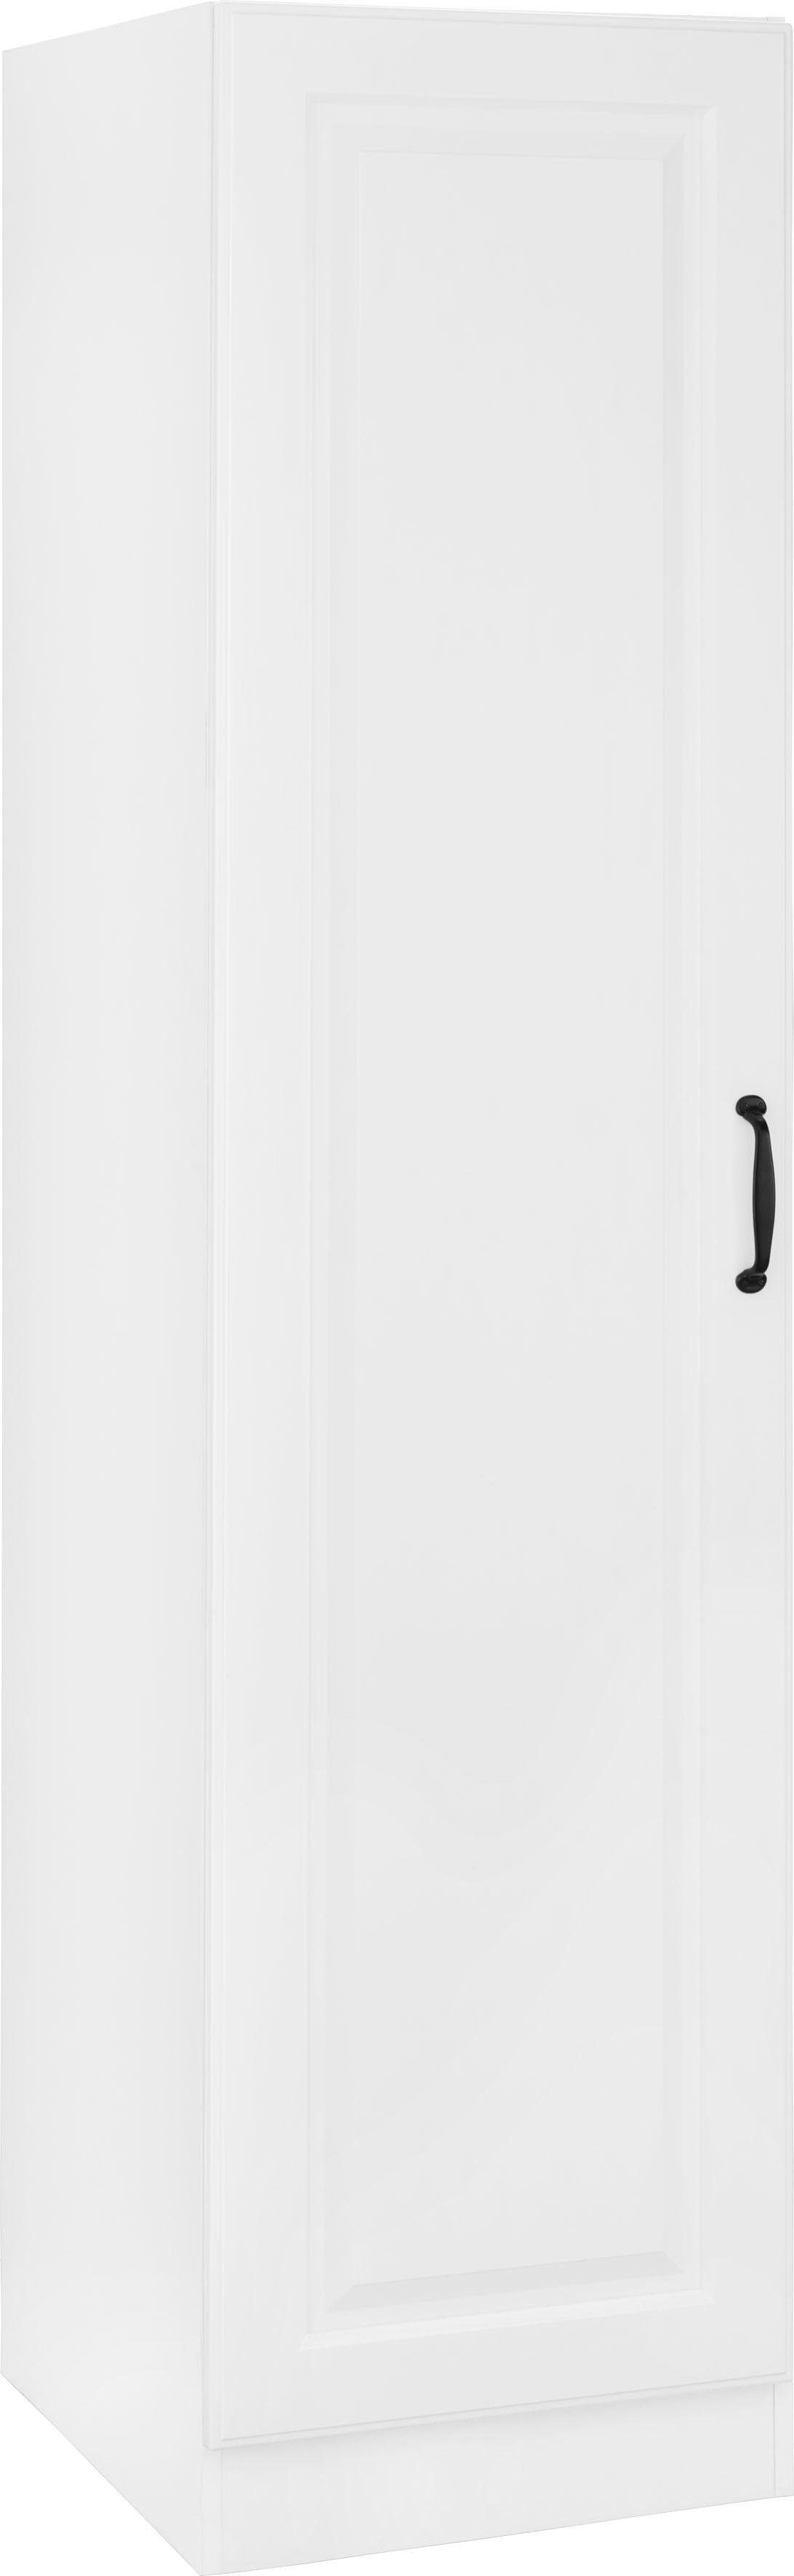 wiho Küchen Vorratsschrank Erla 50 cm breit mit Kassettenfront weiß/weiß | weiß | Vorratsschränke